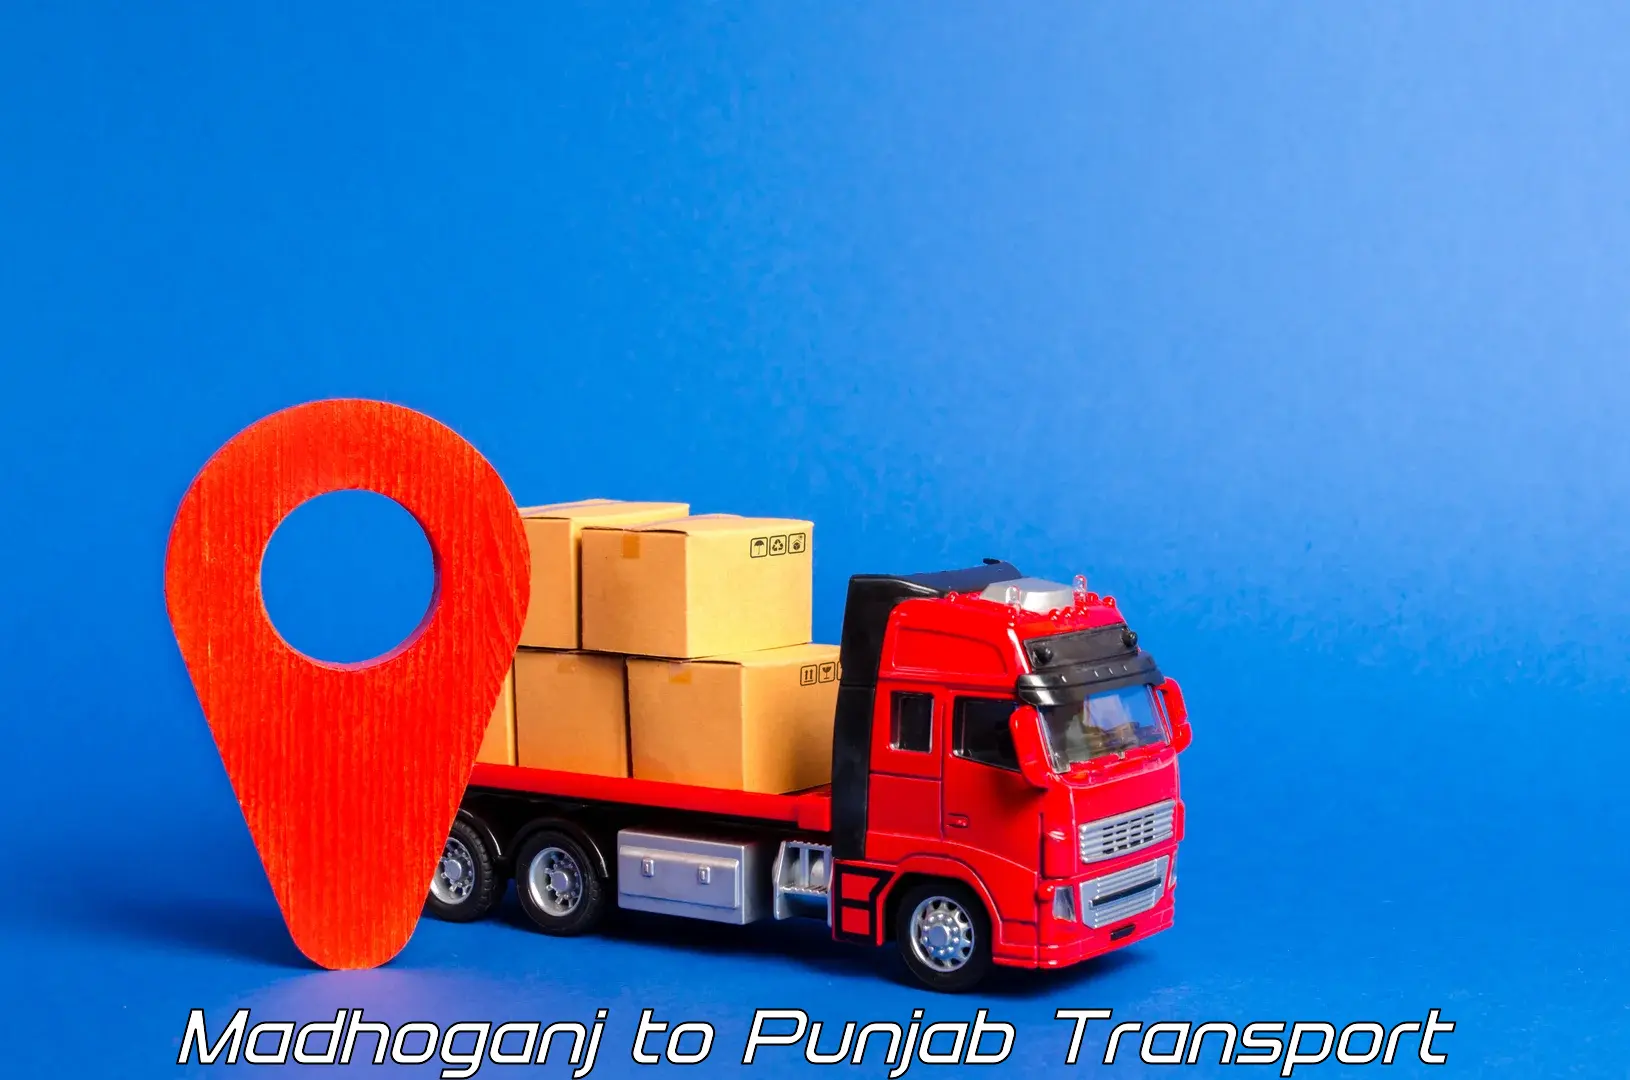 Land transport services Madhoganj to Begowal